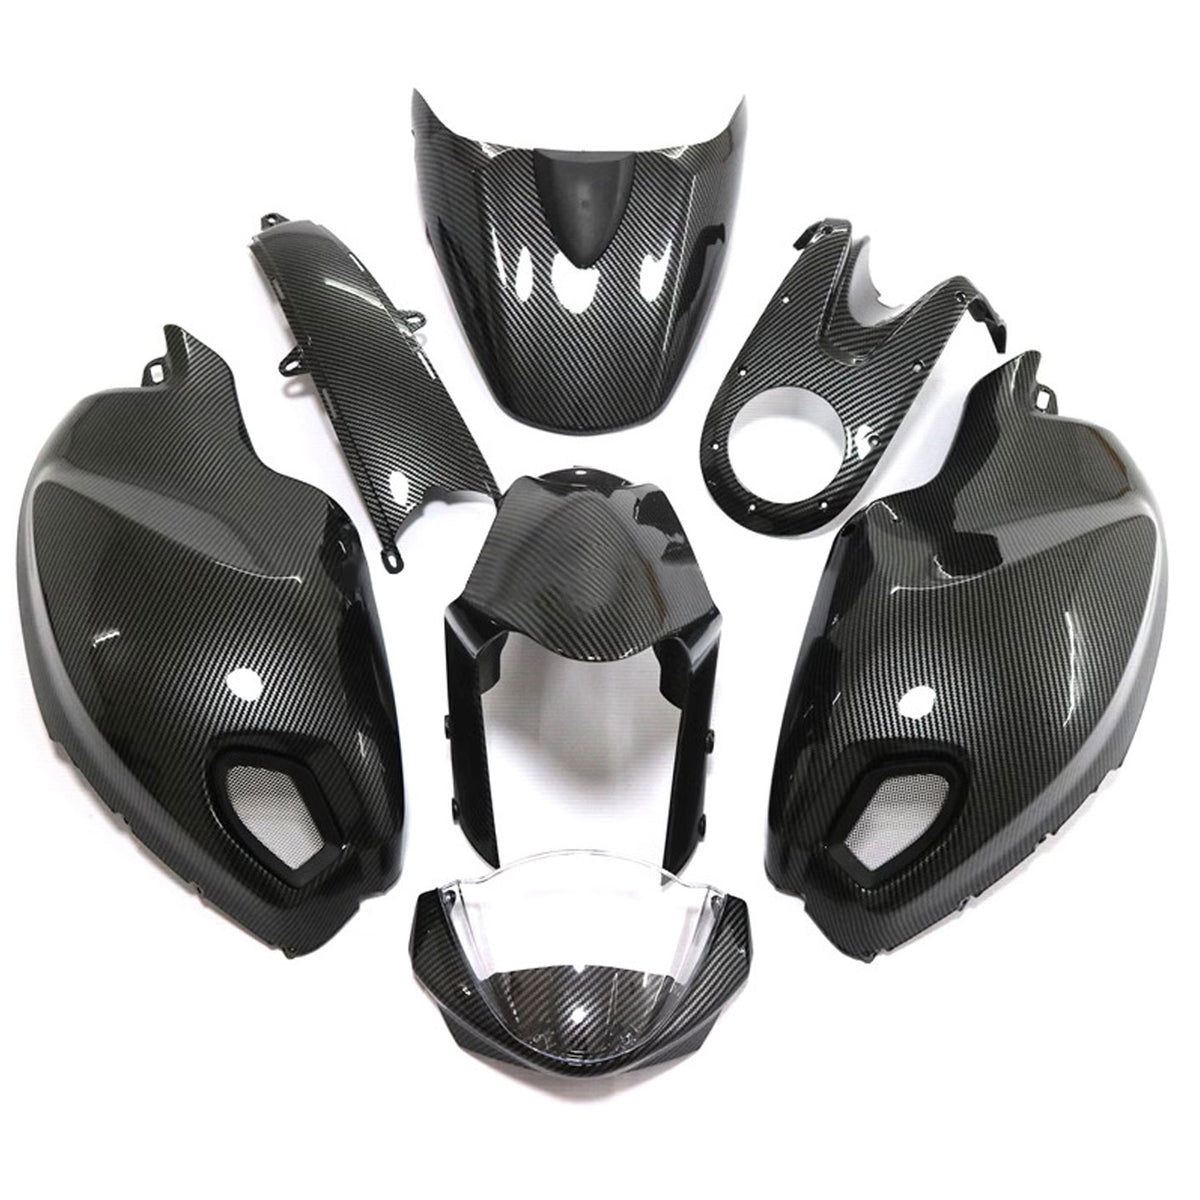 Amotopart Kit carena nera in fibra di carbonio Ducati Monster 696 796 1100 S EVO per tutti gli anni